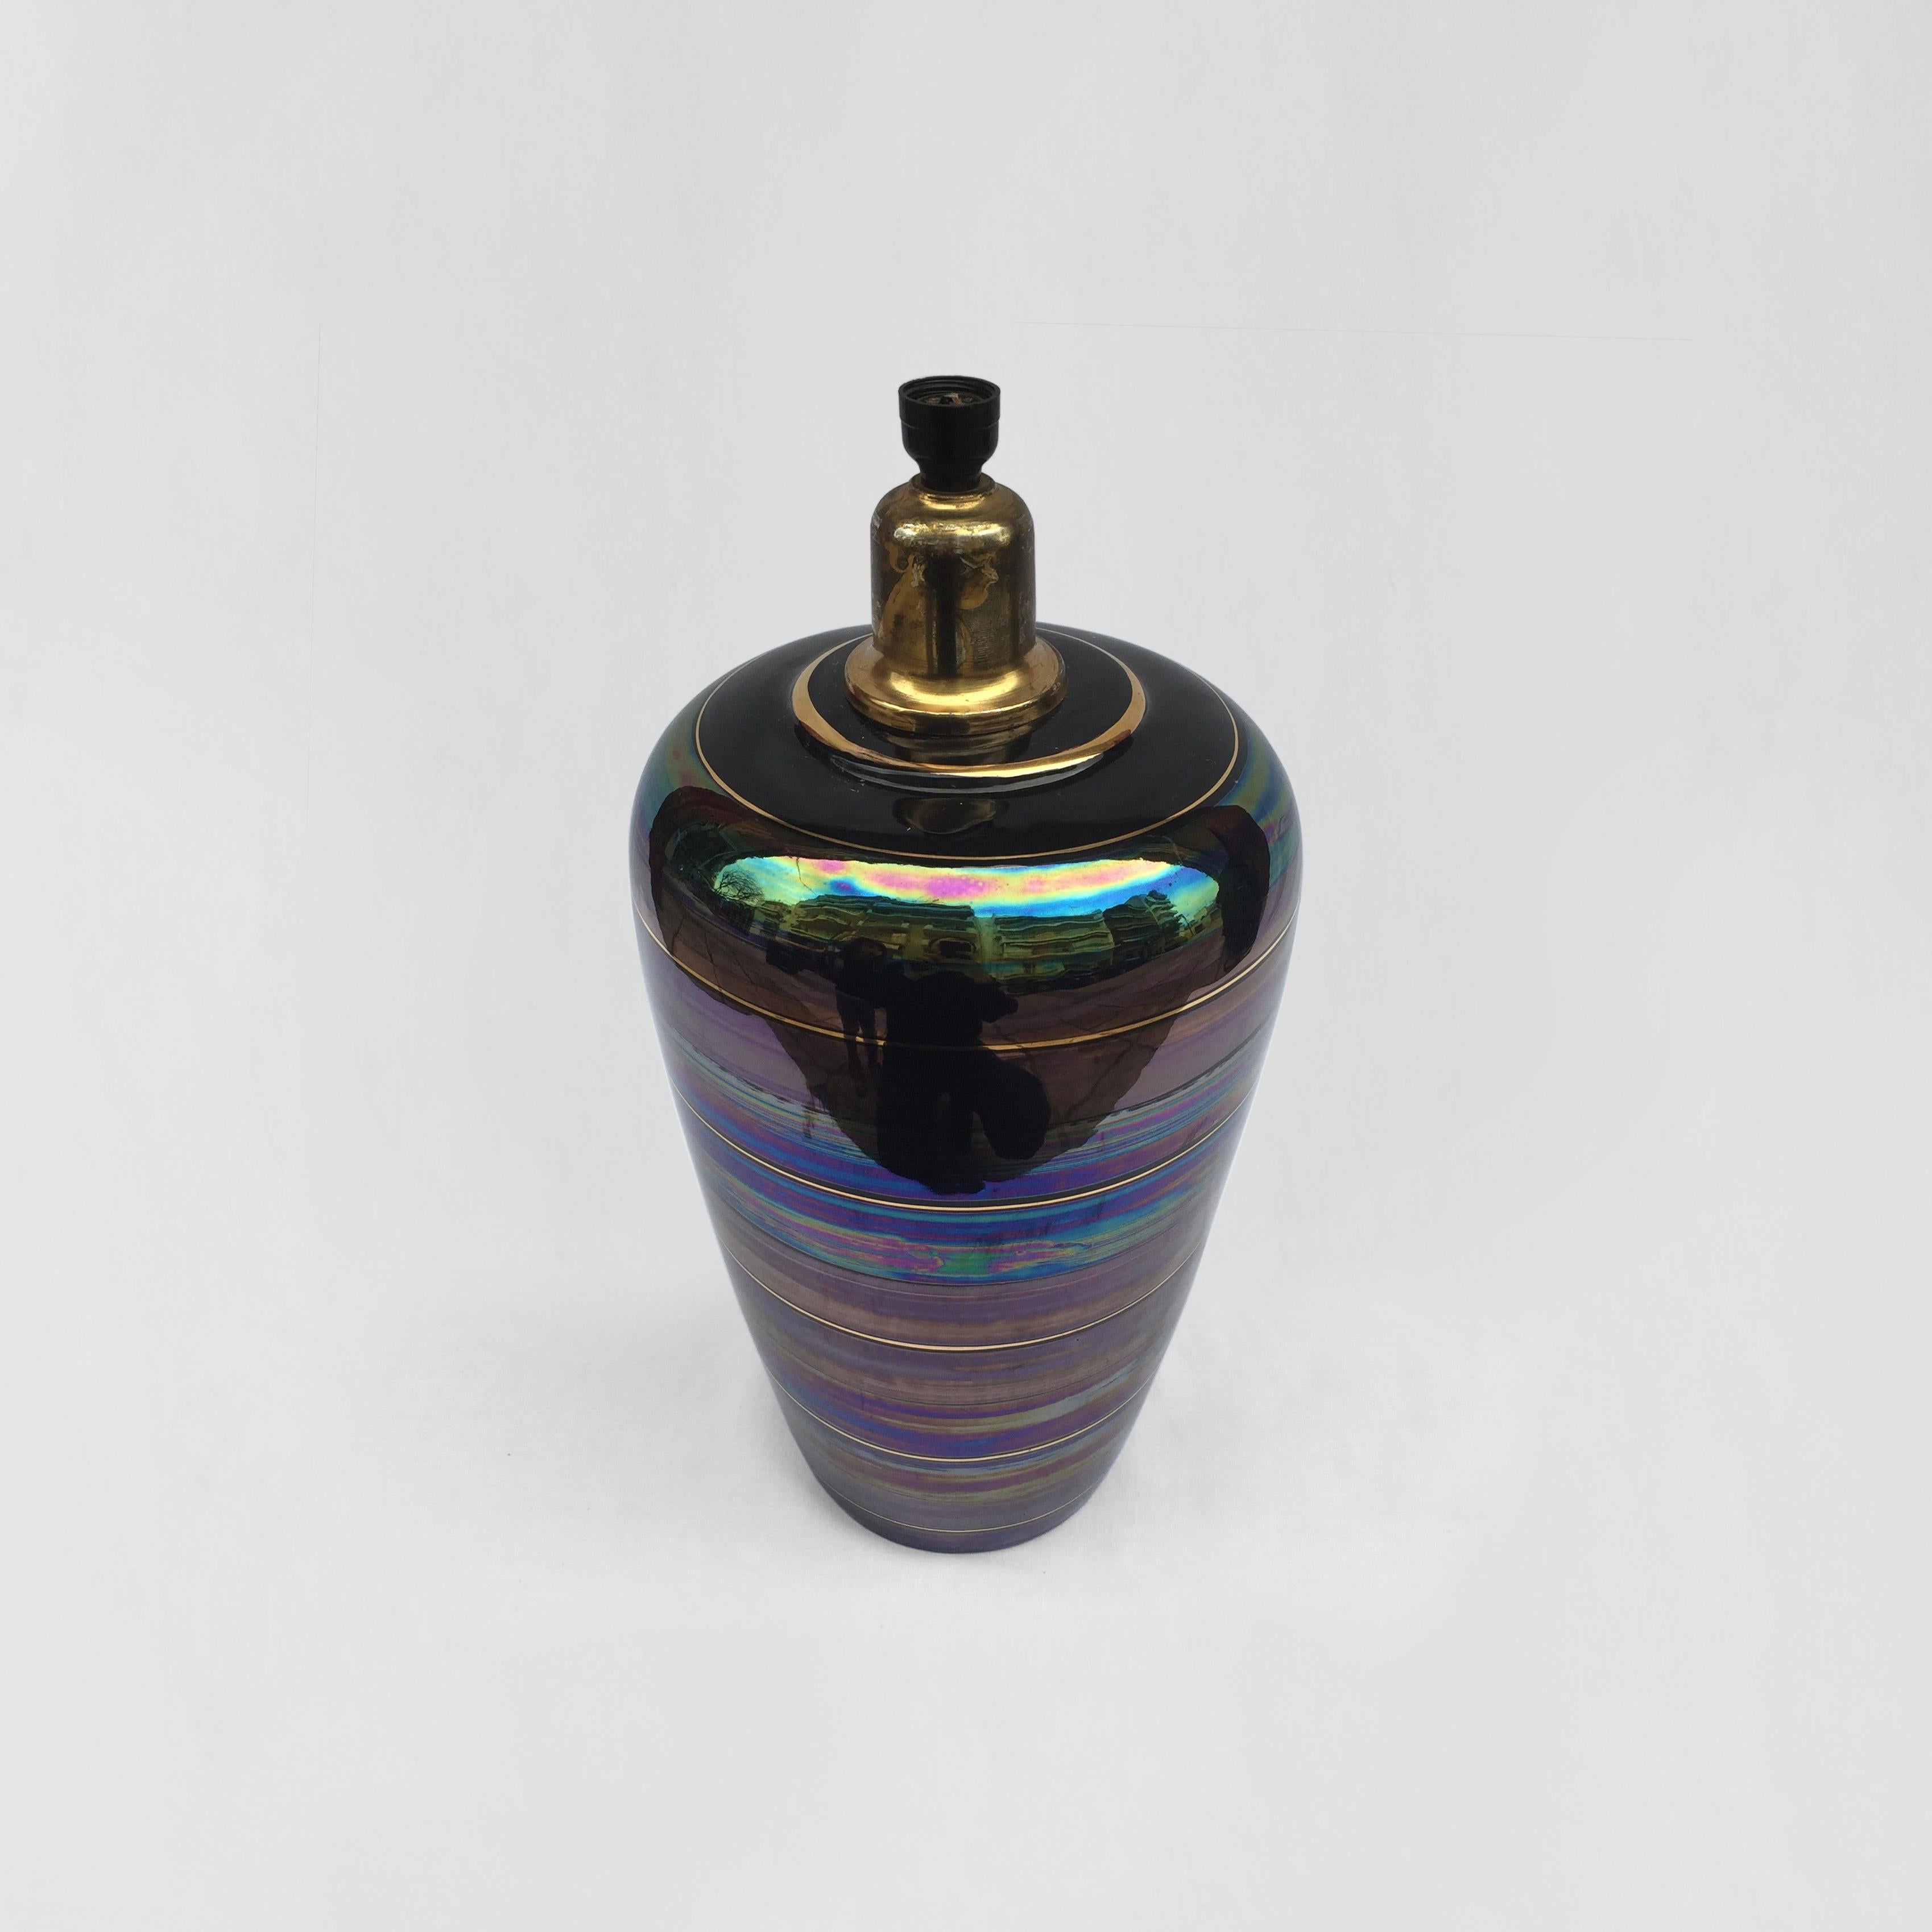 Vernissé Lampe de bureau en céramique irisée des années 1970, style Art nouveau, à la manière de Johann Loetz en vente